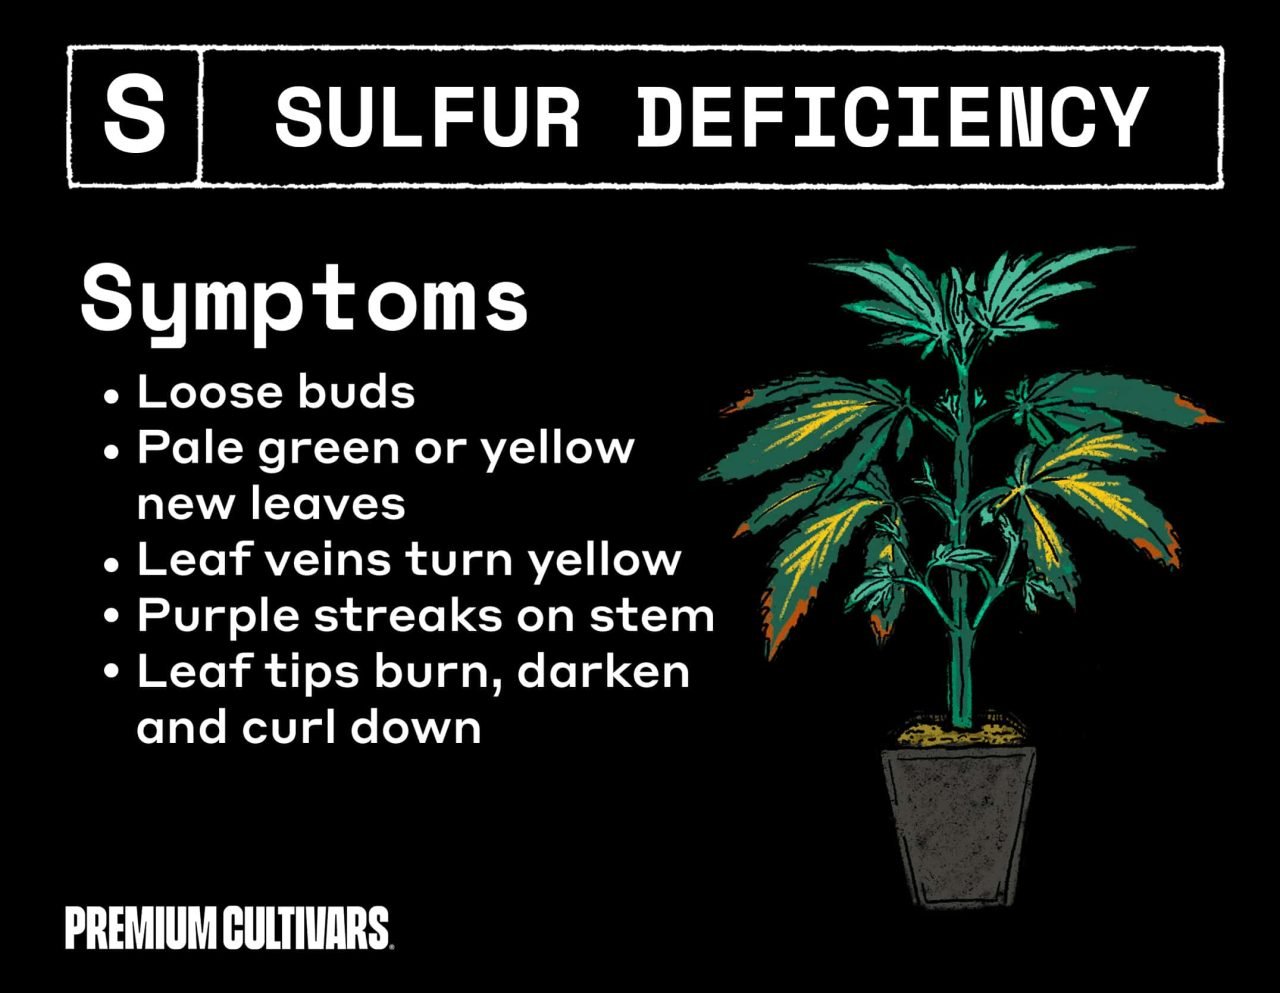 Weed sulfur deficiency symptoms